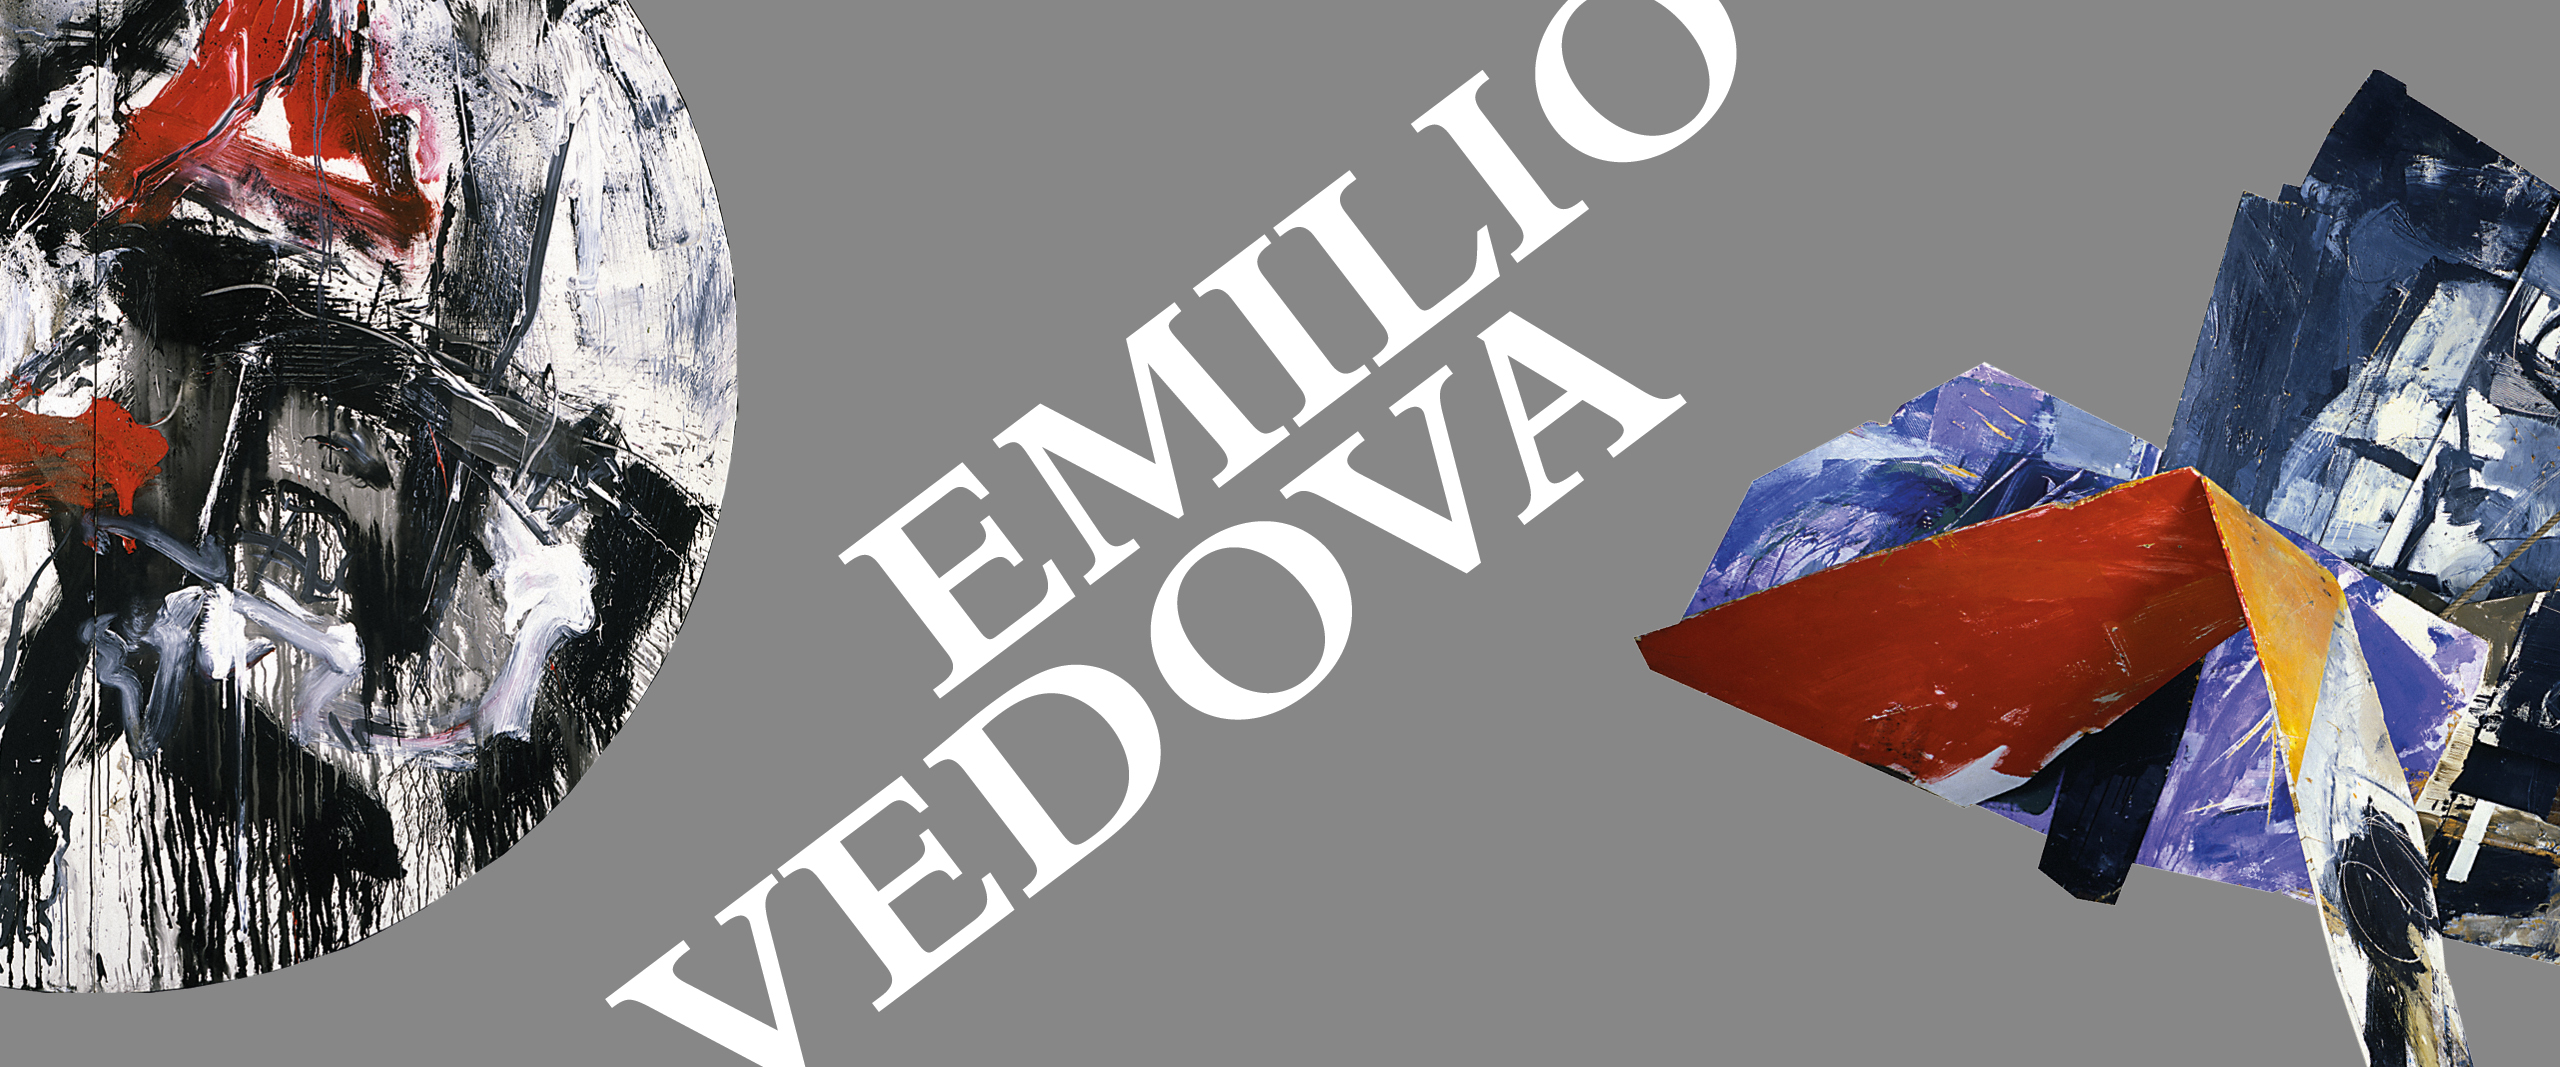 Emilio Vedova 